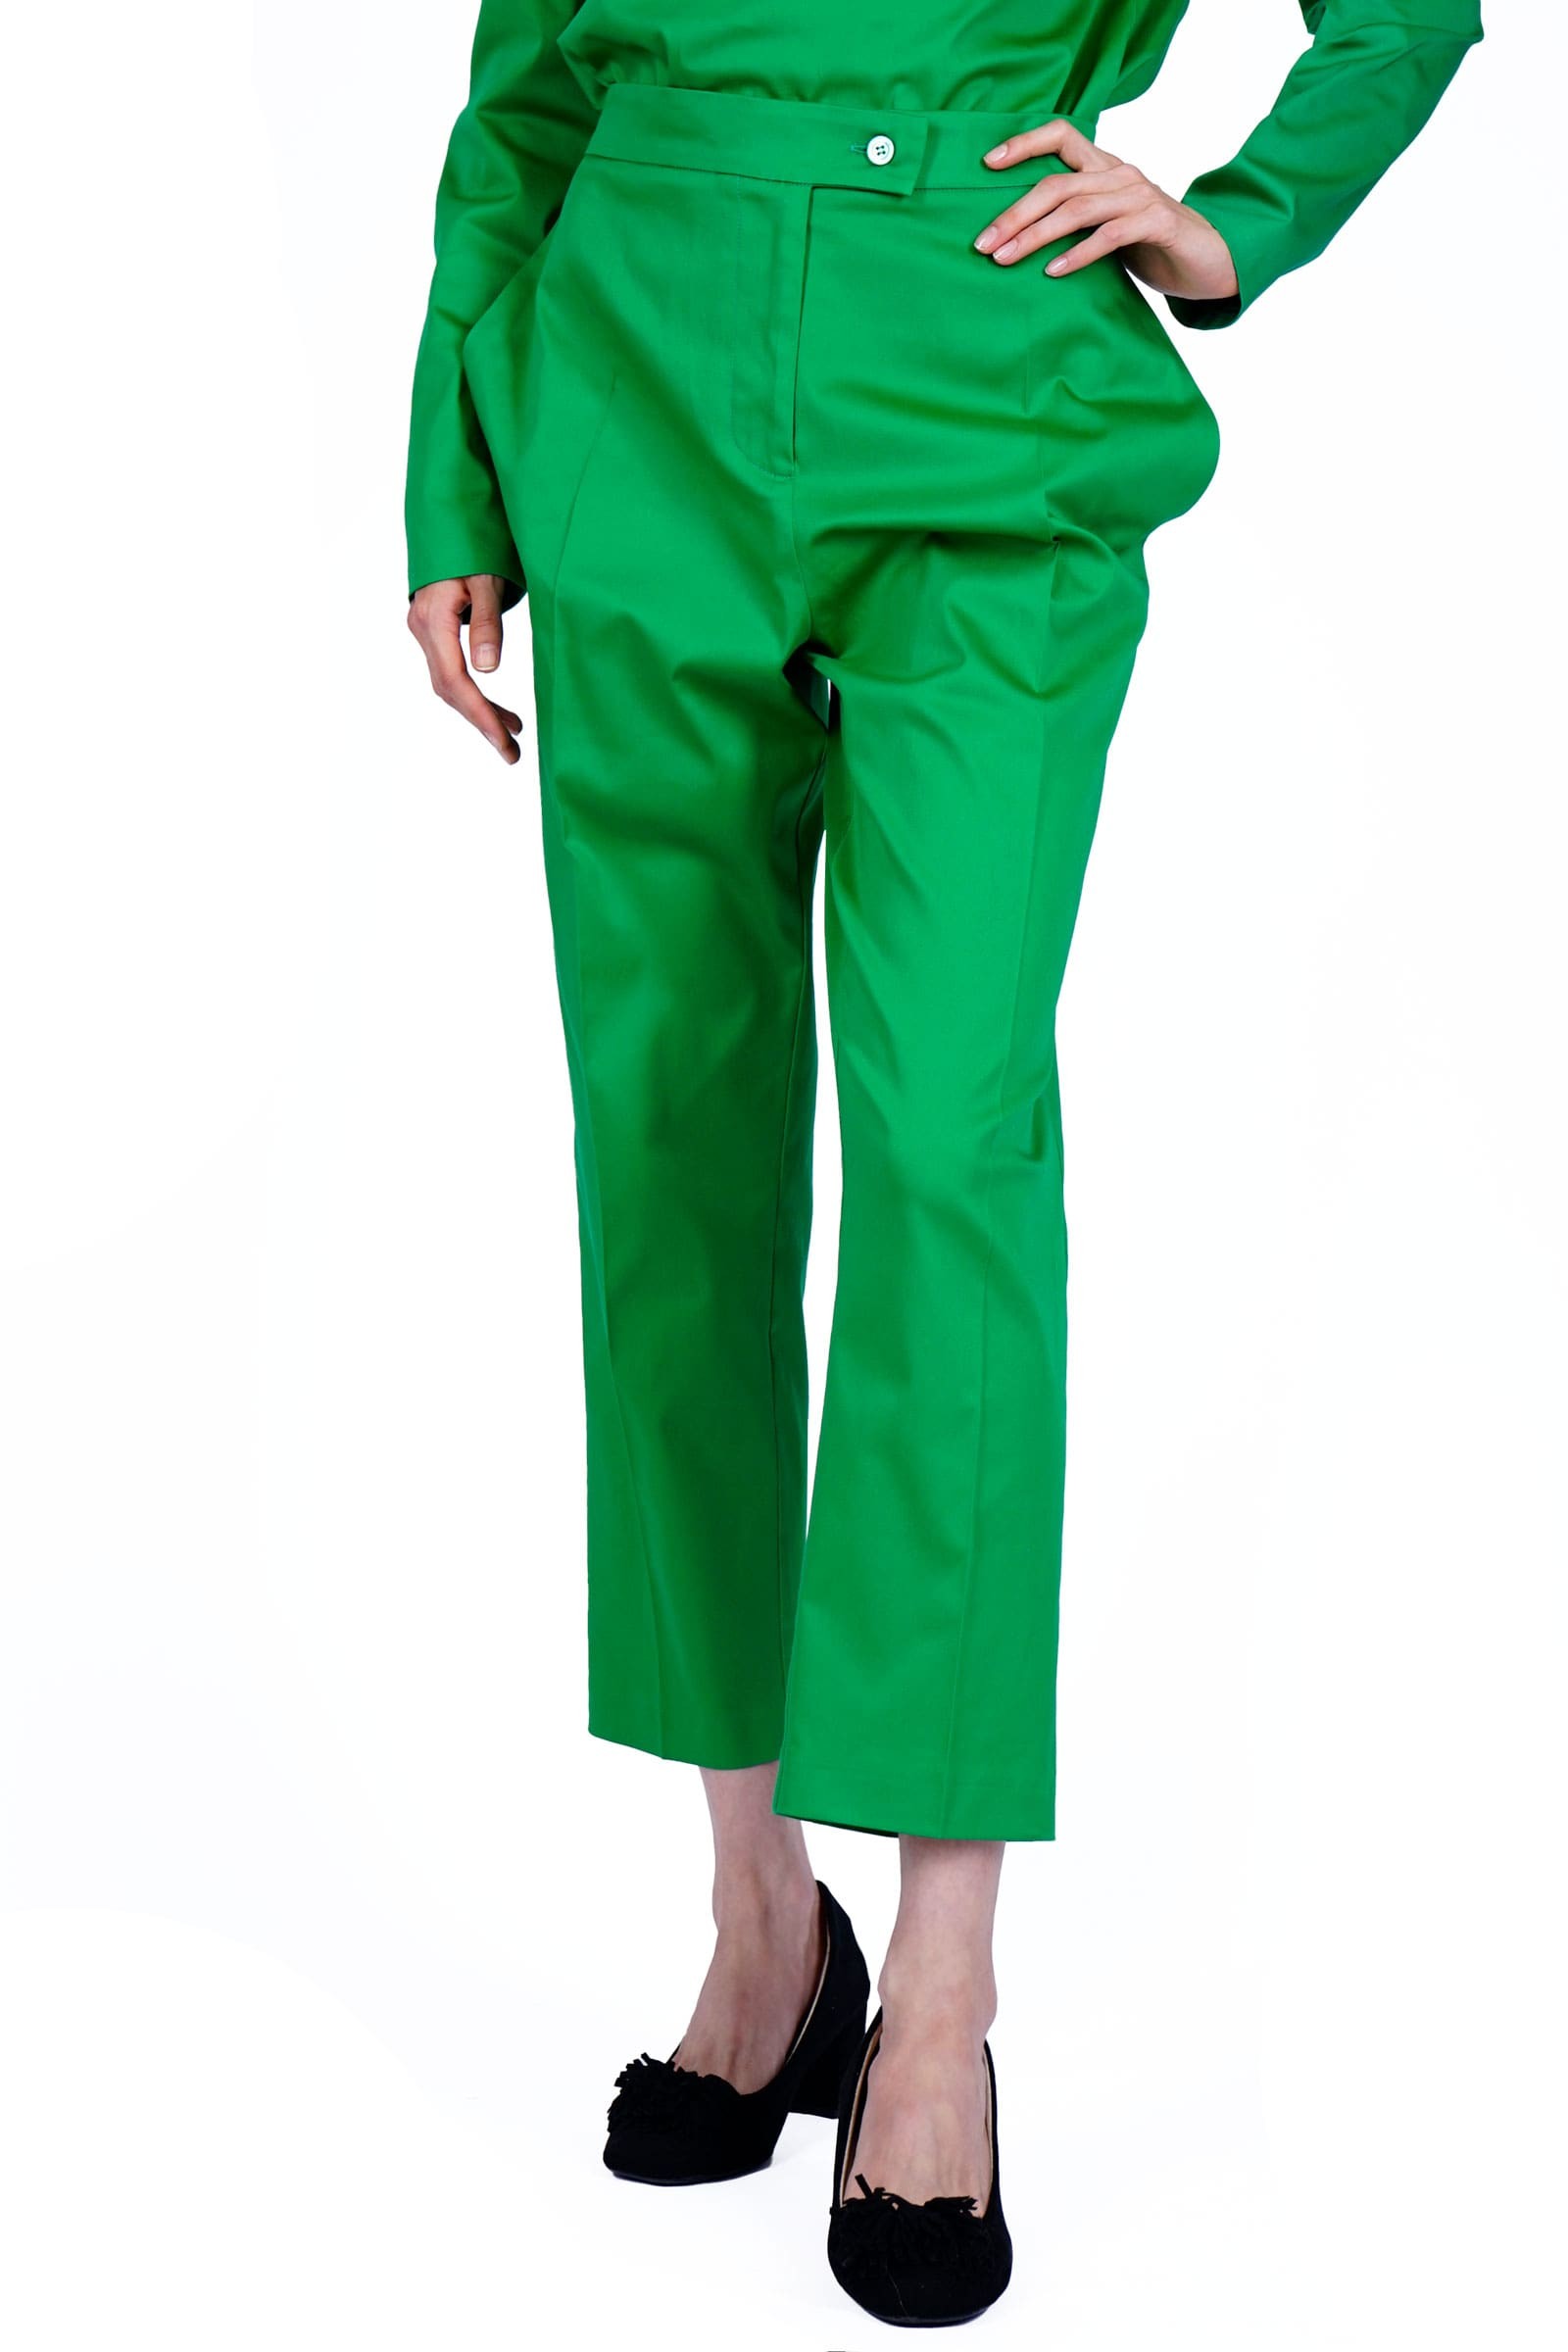 Pantalon verde cu buzunare...